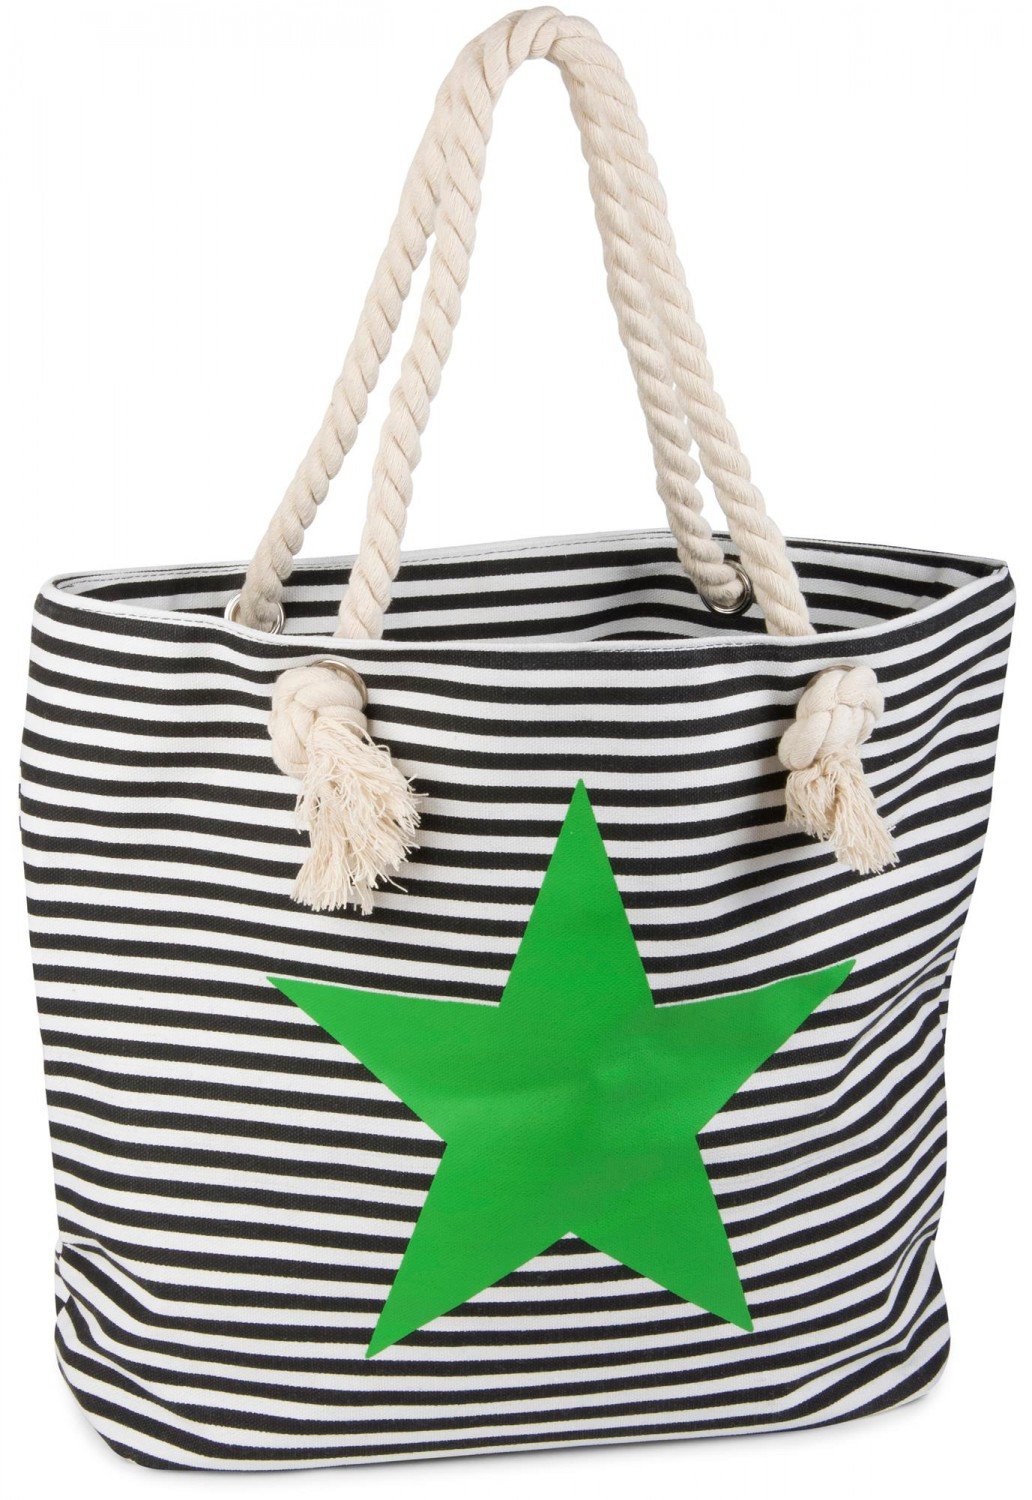 styleBREAKER Strandtasche in Streifen Optik mit Stern, Schultertasche, Shopper, Damen 02012037, Farbe:Schwarz-Weiß/Grün